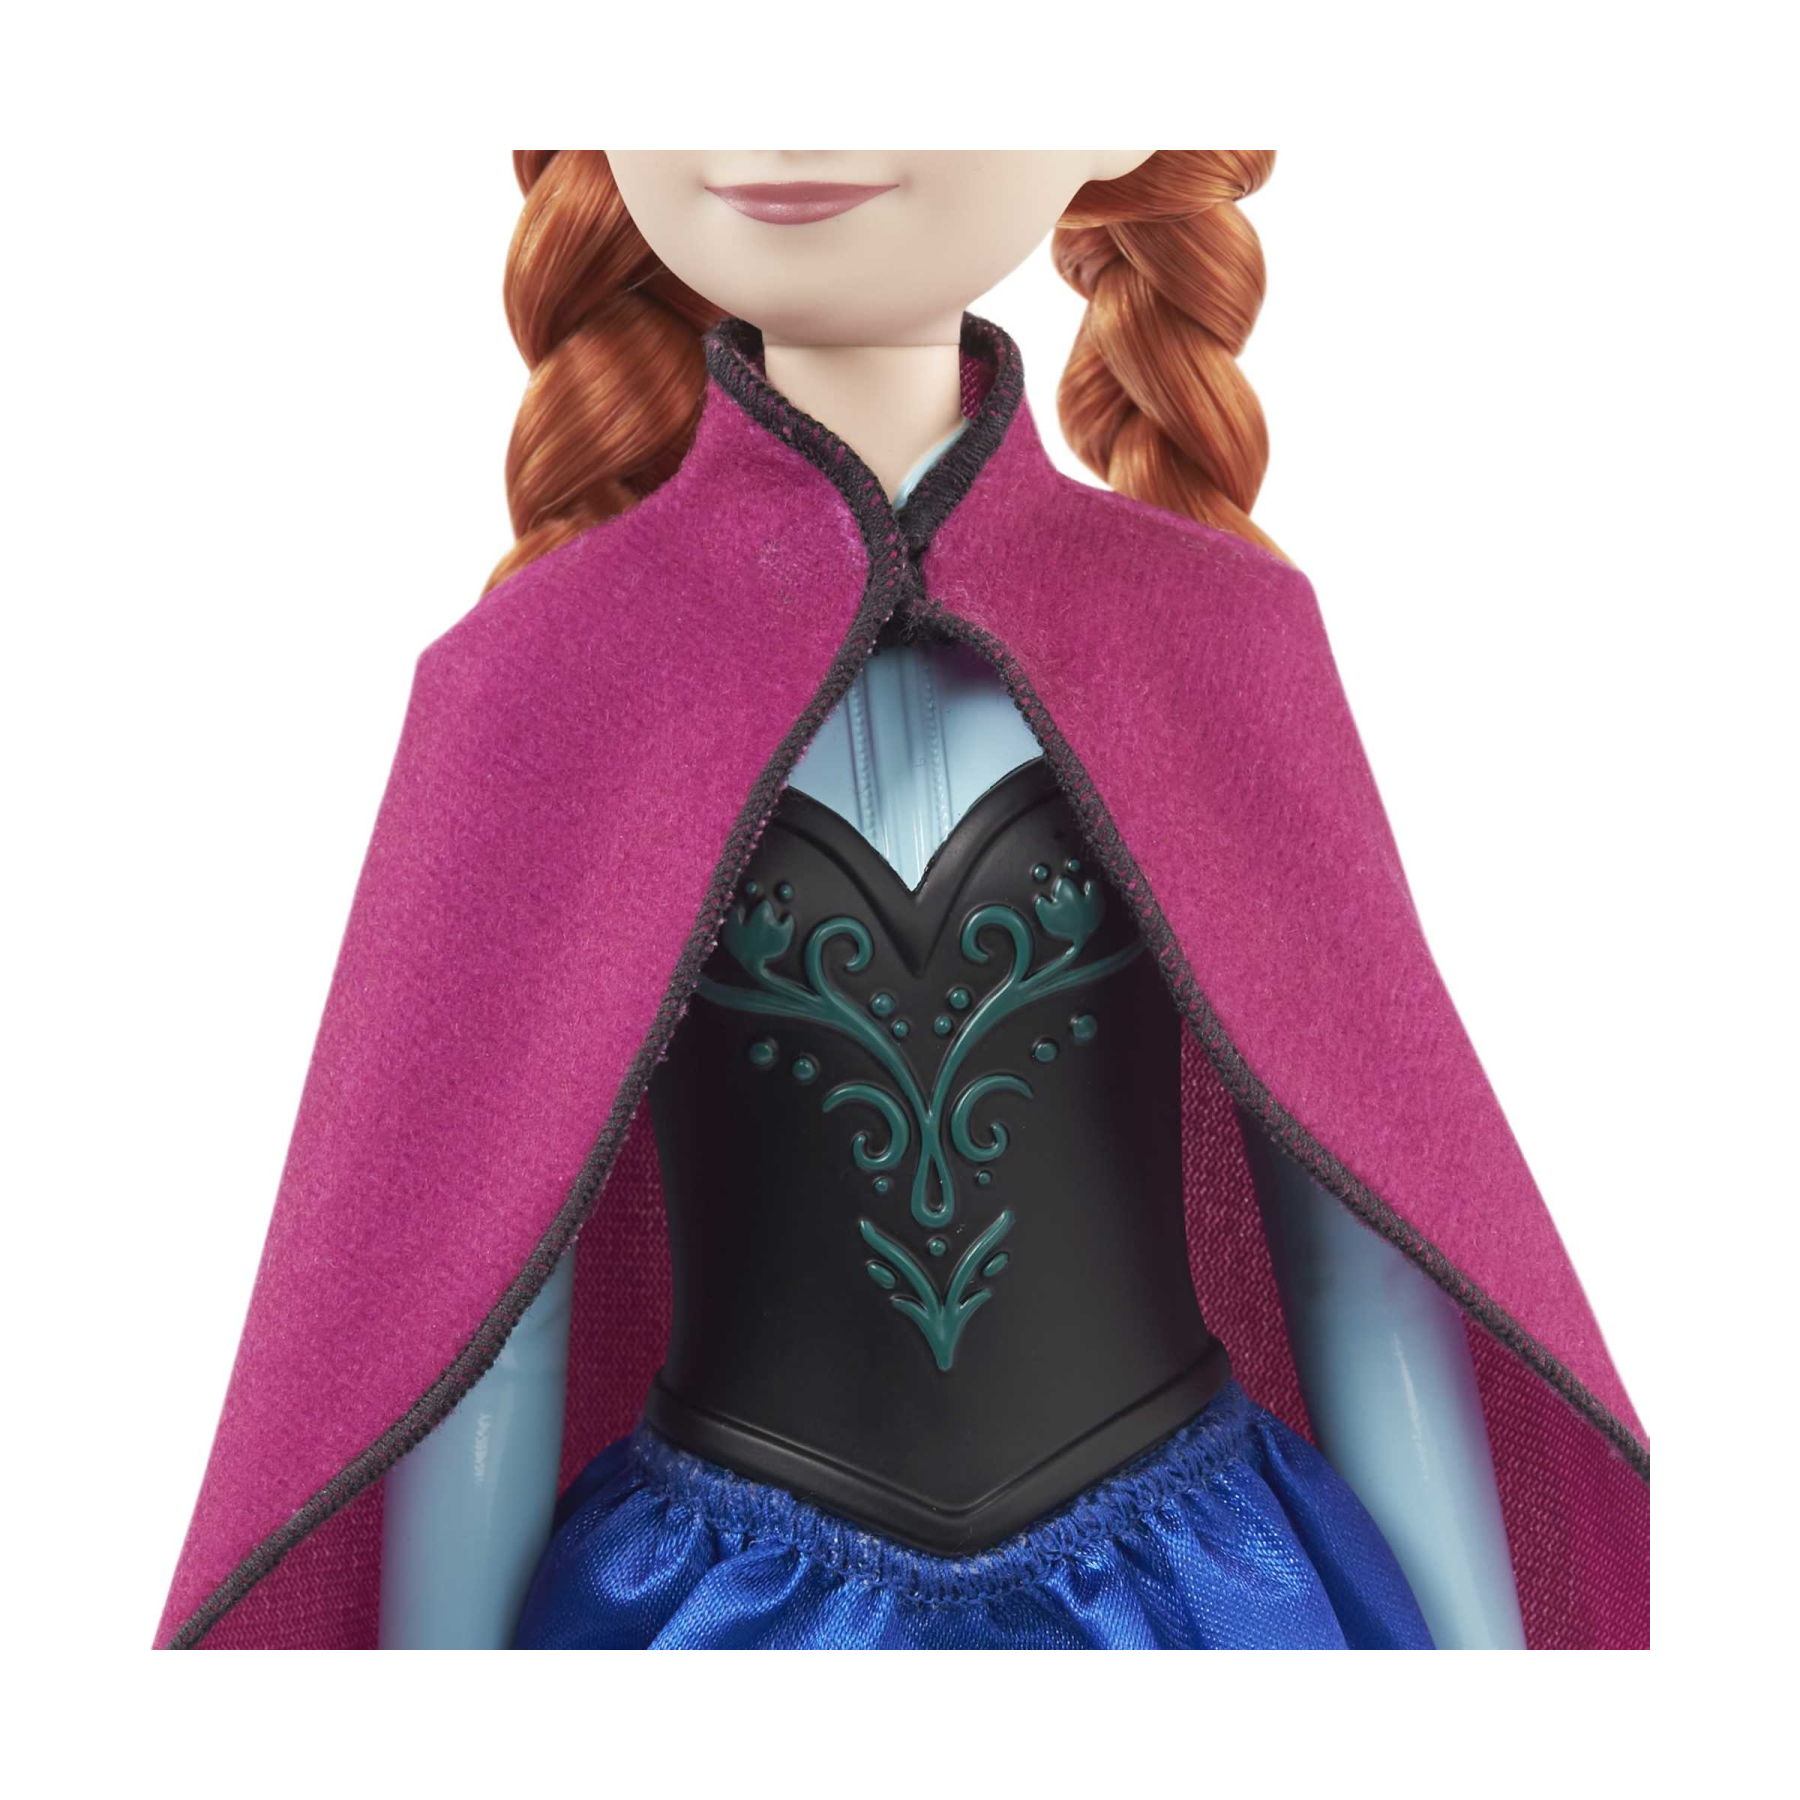 Disney frozen - anna, bambola con abito elegante e accessori ispirati al film dsney frozen 1, giocattolo per bambini, 3+ anni, hlw49 - DISNEY PRINCESS, Frozen